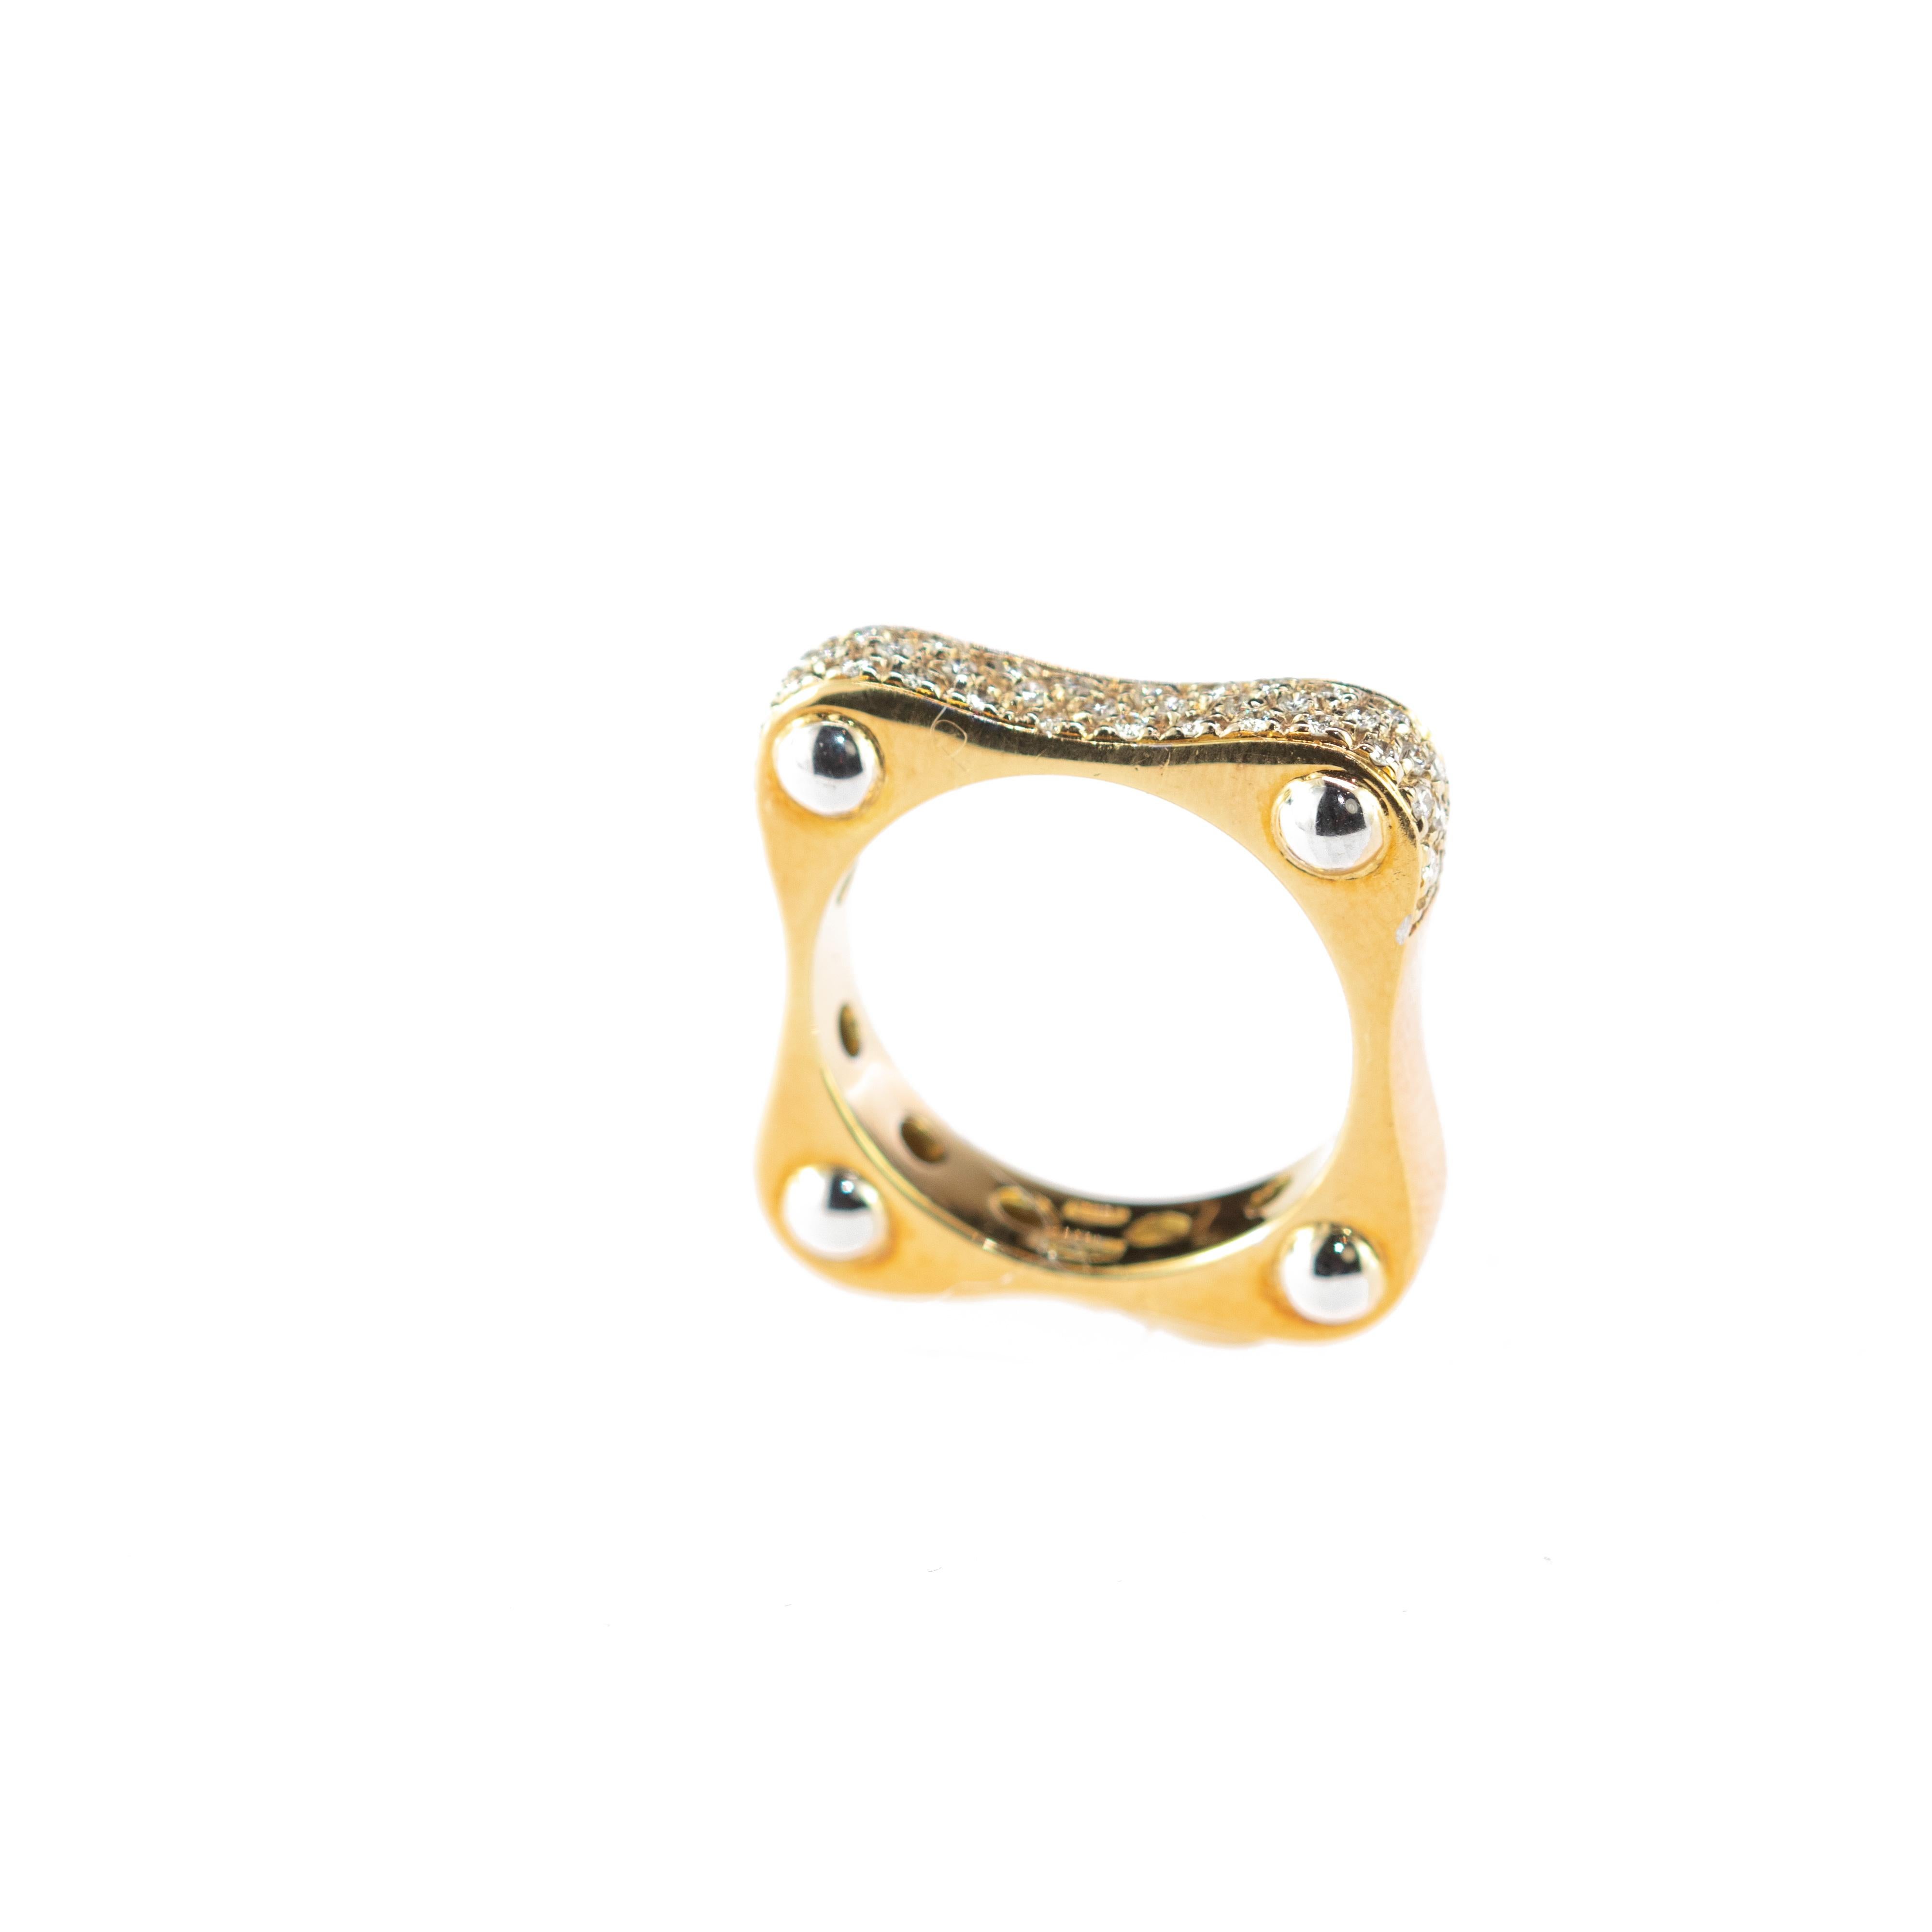 Round Diamond 18 Karat Yellow Gold Band Square Minimalist Handmade Ring 3